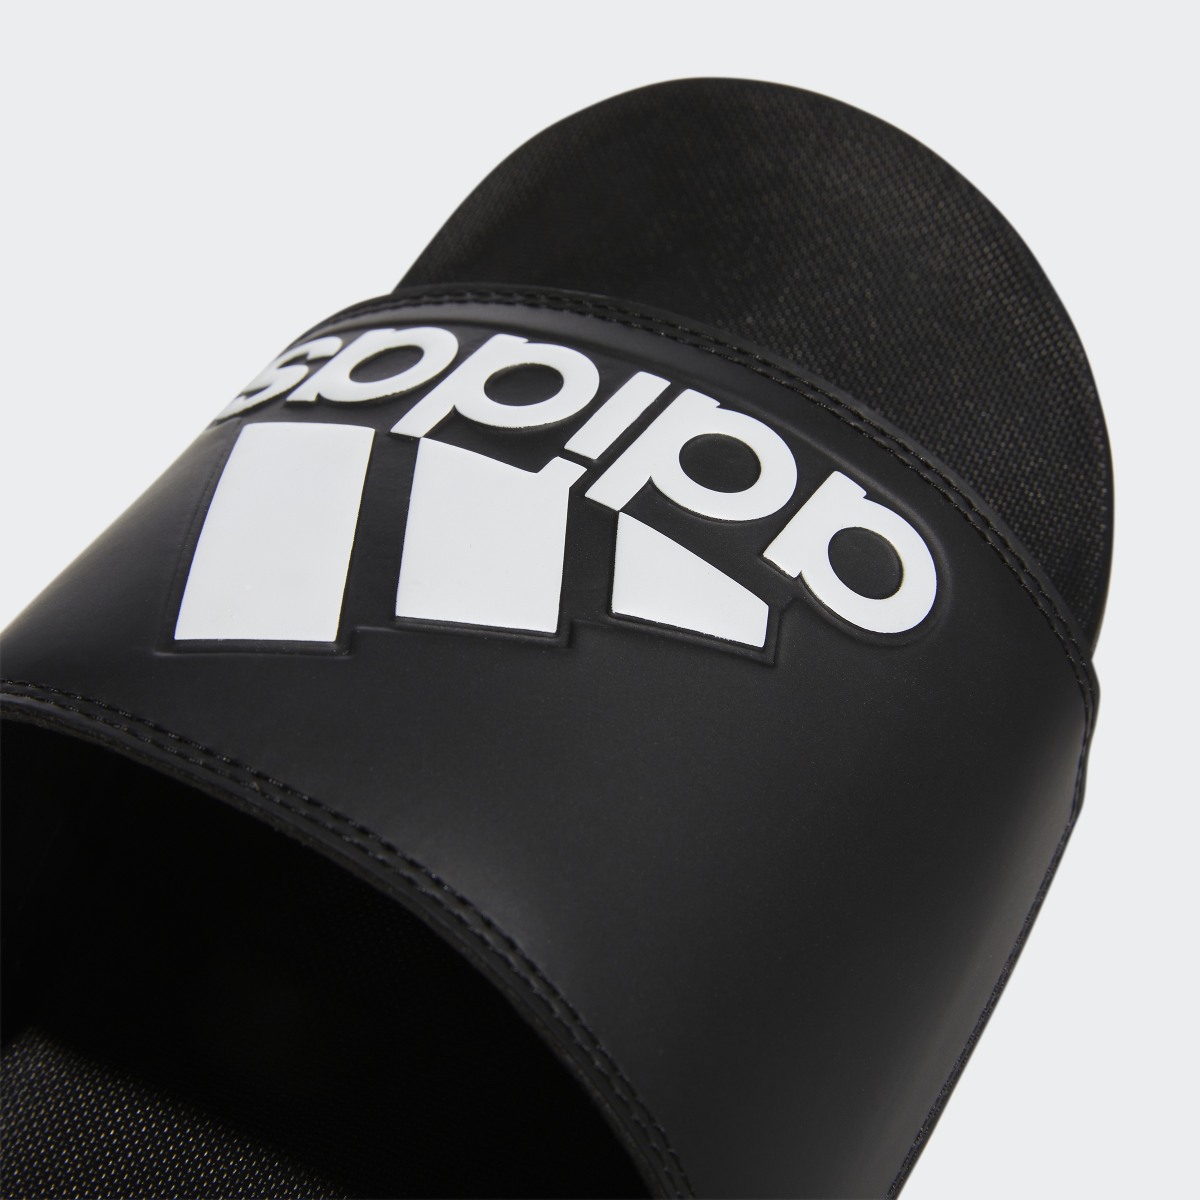 Adidas Comfort adilette. 9